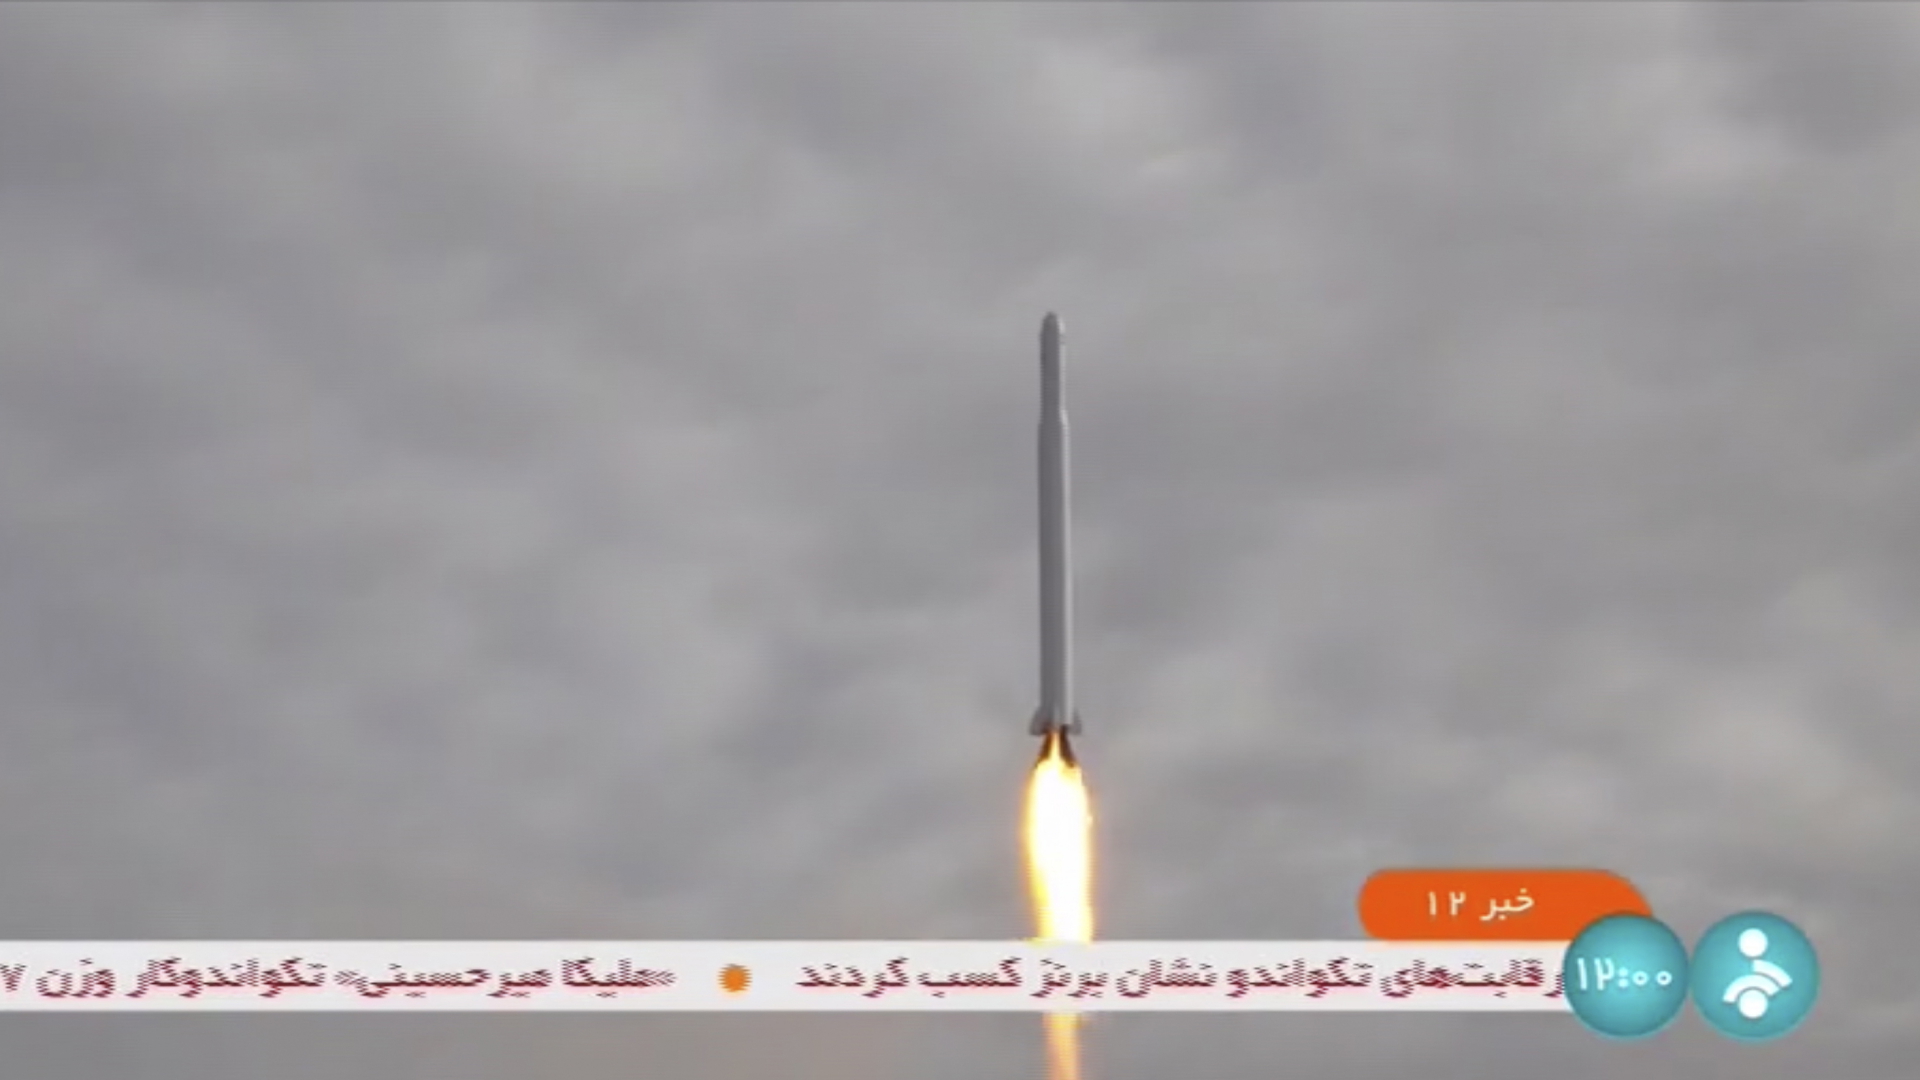 Dieser Ausschnitt aus einem Video, das vom iranischen Staatsfernsehen ausgestrahlt wurde, zeigt laut dem iranischen Kommunikationsminister, den Start des Satelliten "Nur-3". 